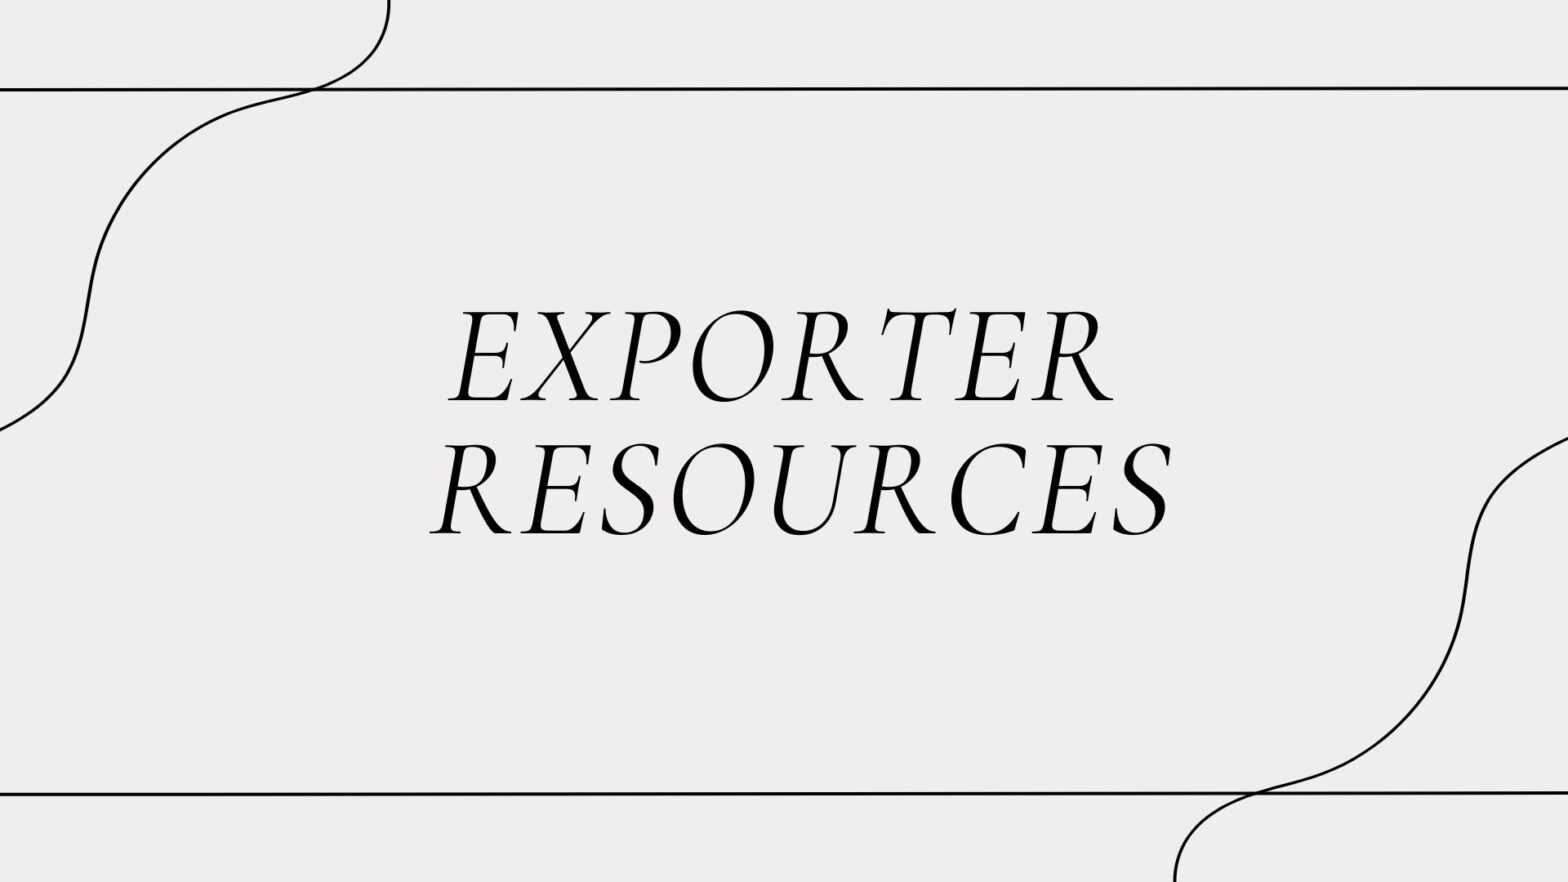 Exporter Resources